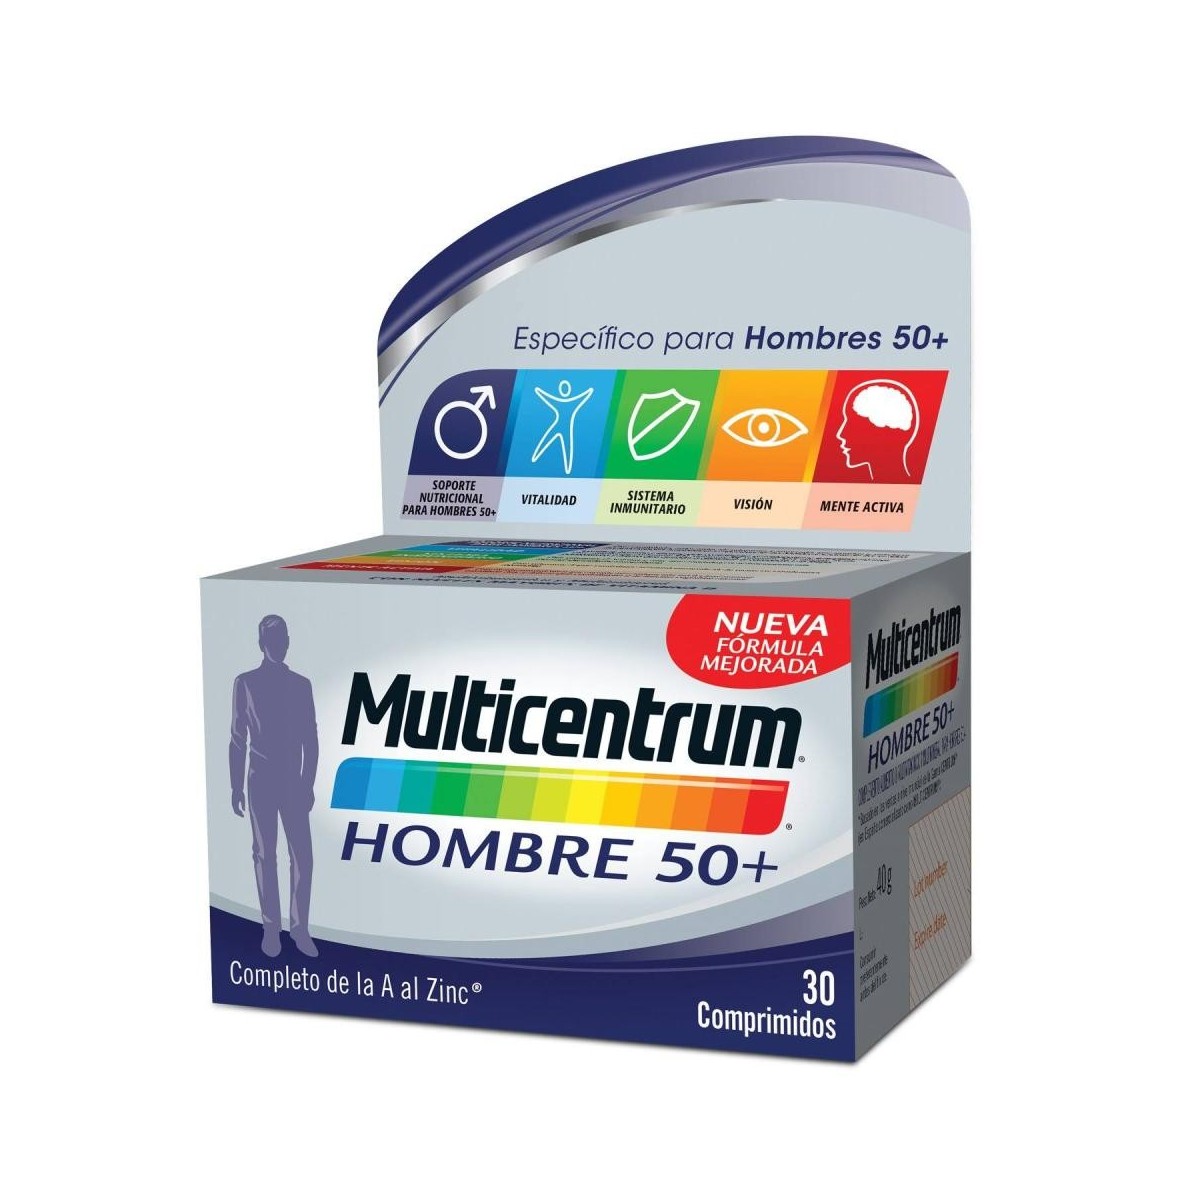 Multicentrum  30 Comprimidos Hombre 50